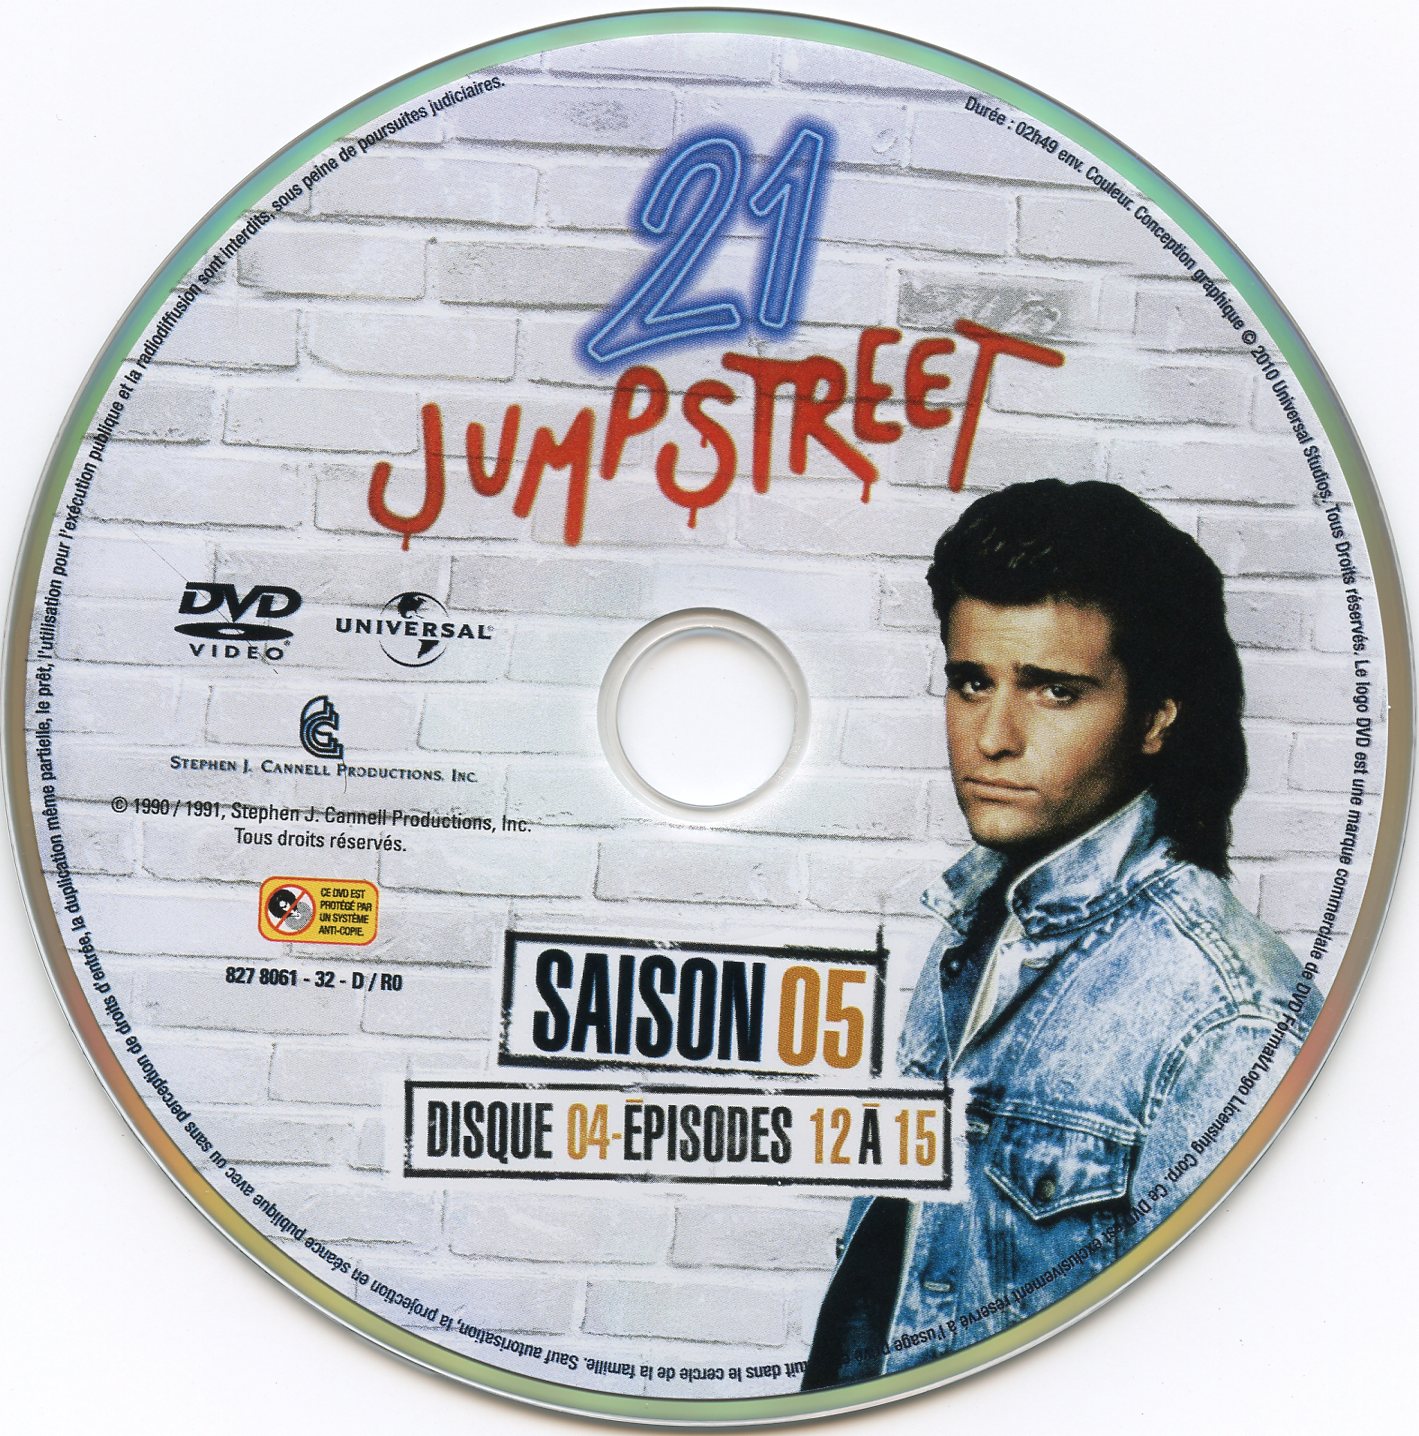 21 jump street Saison 5 DVD 4